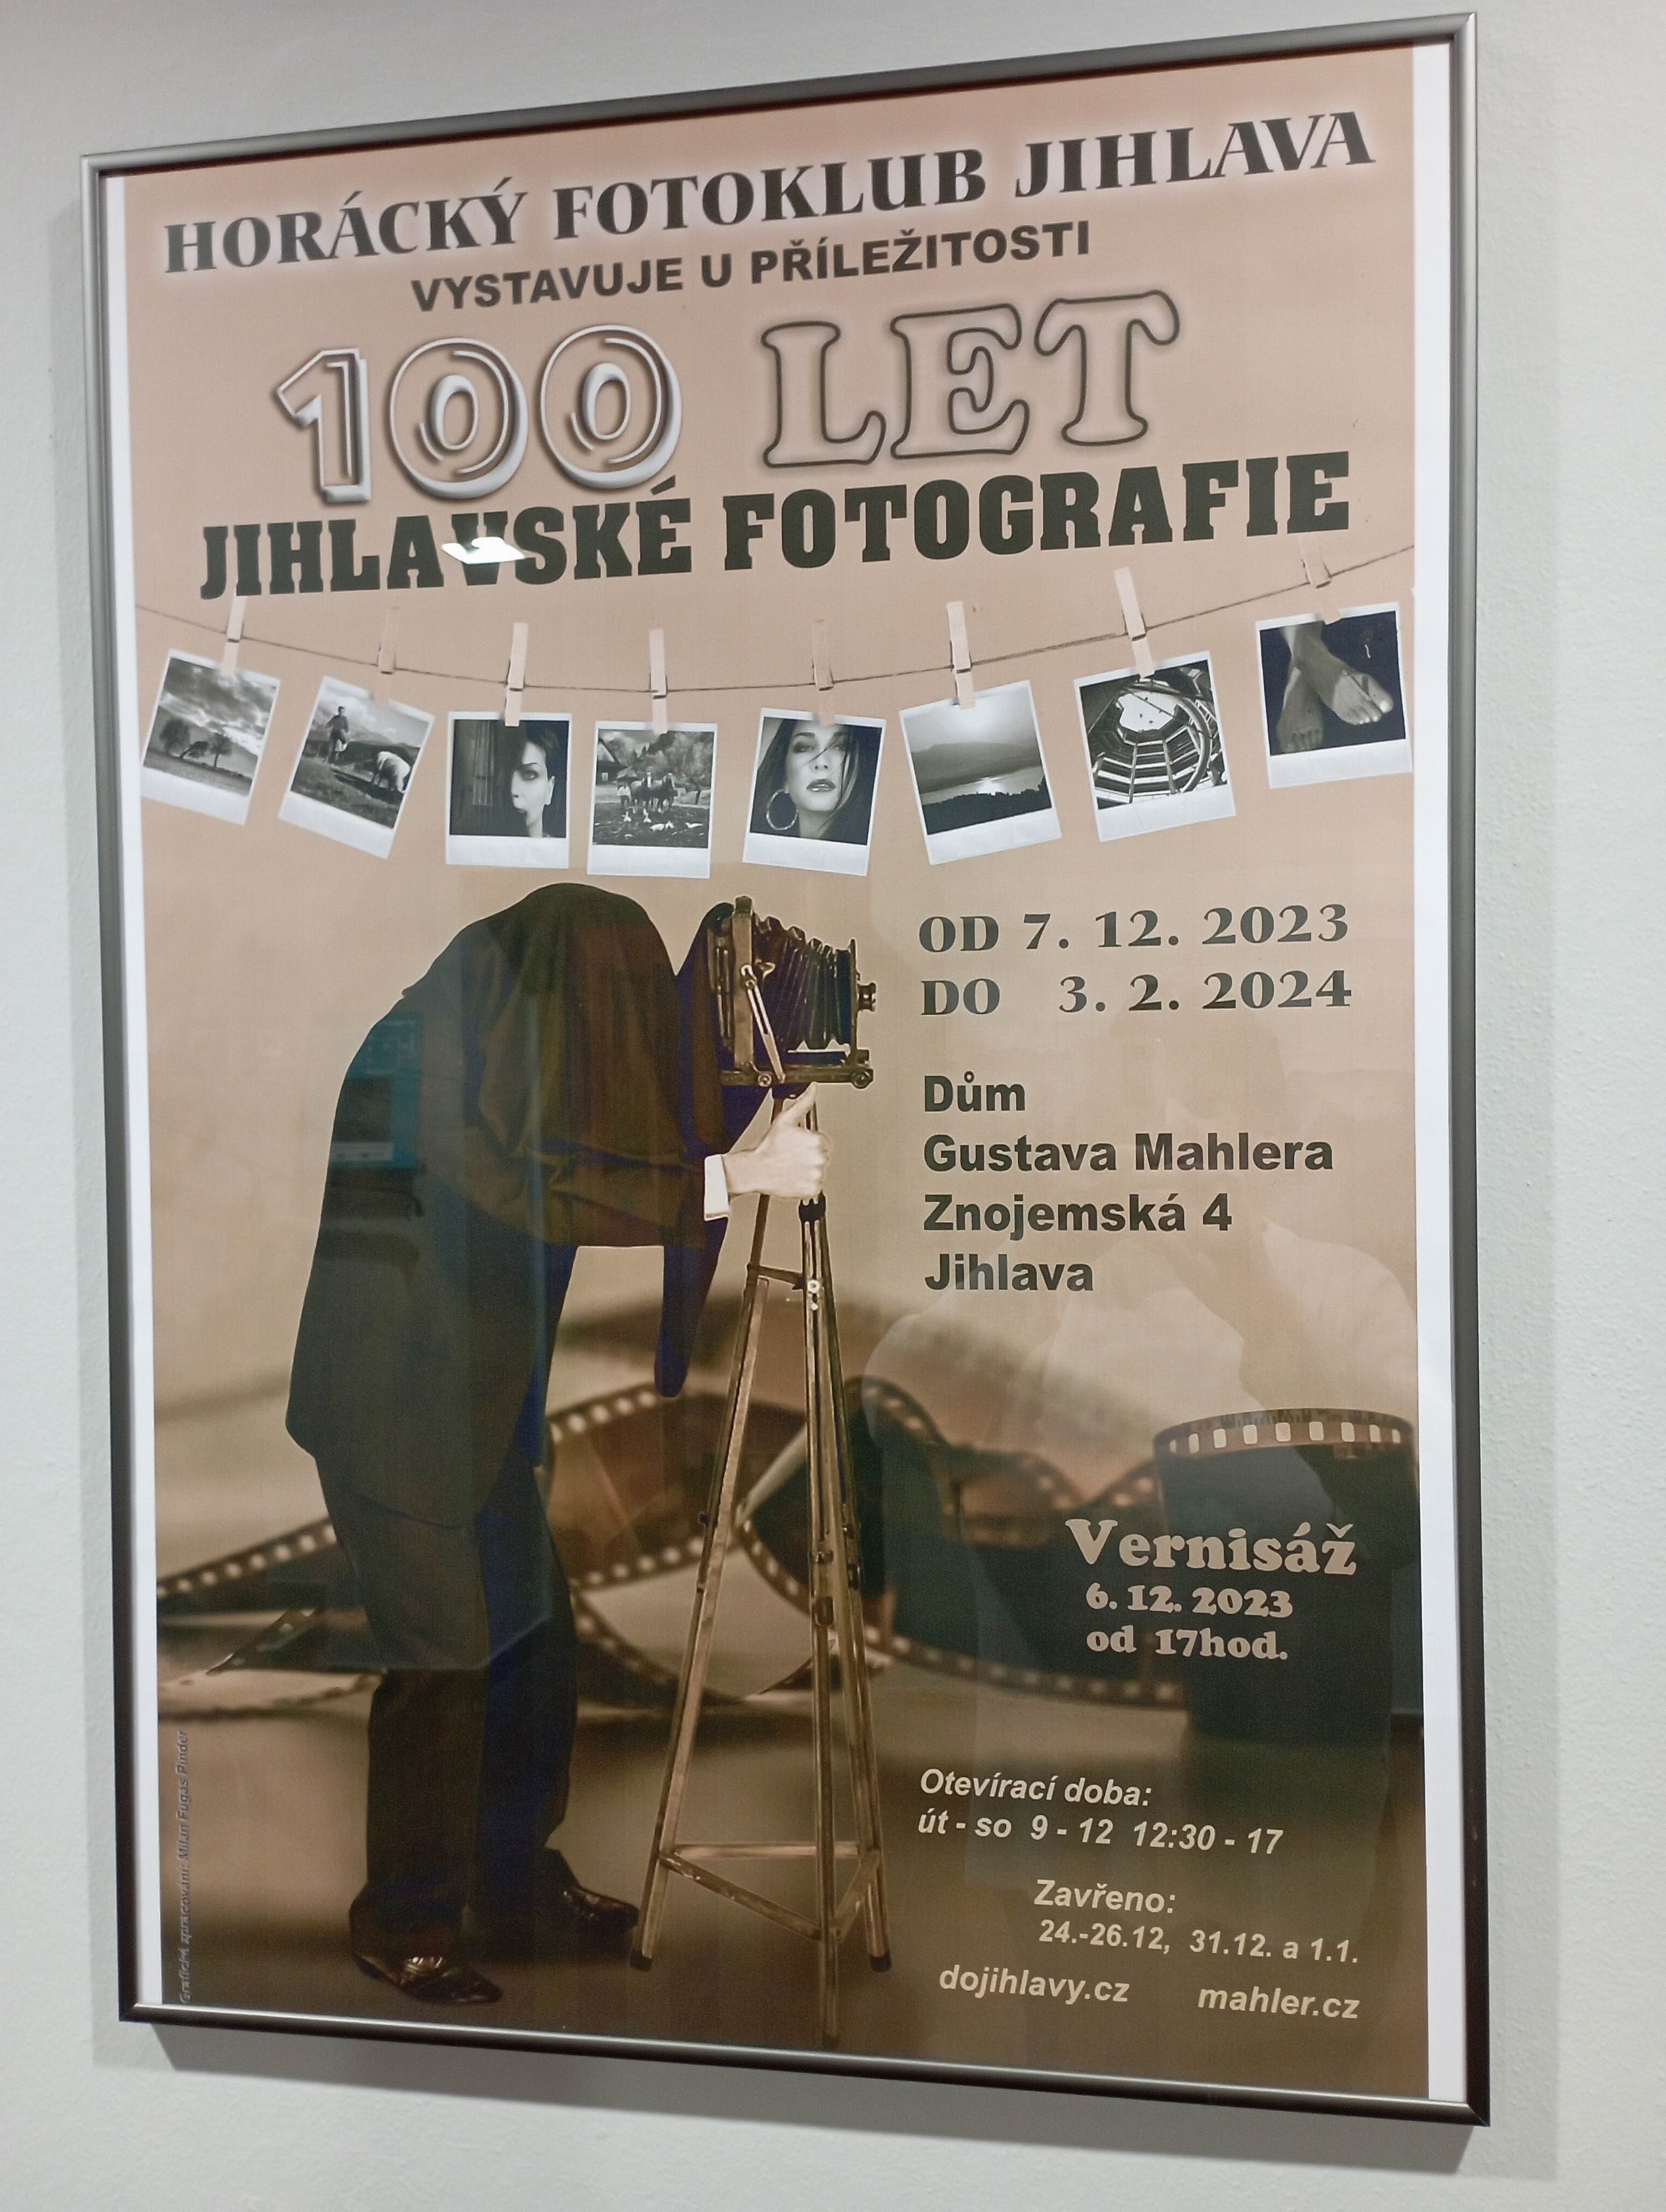 11 100 let jihlavské fotografie